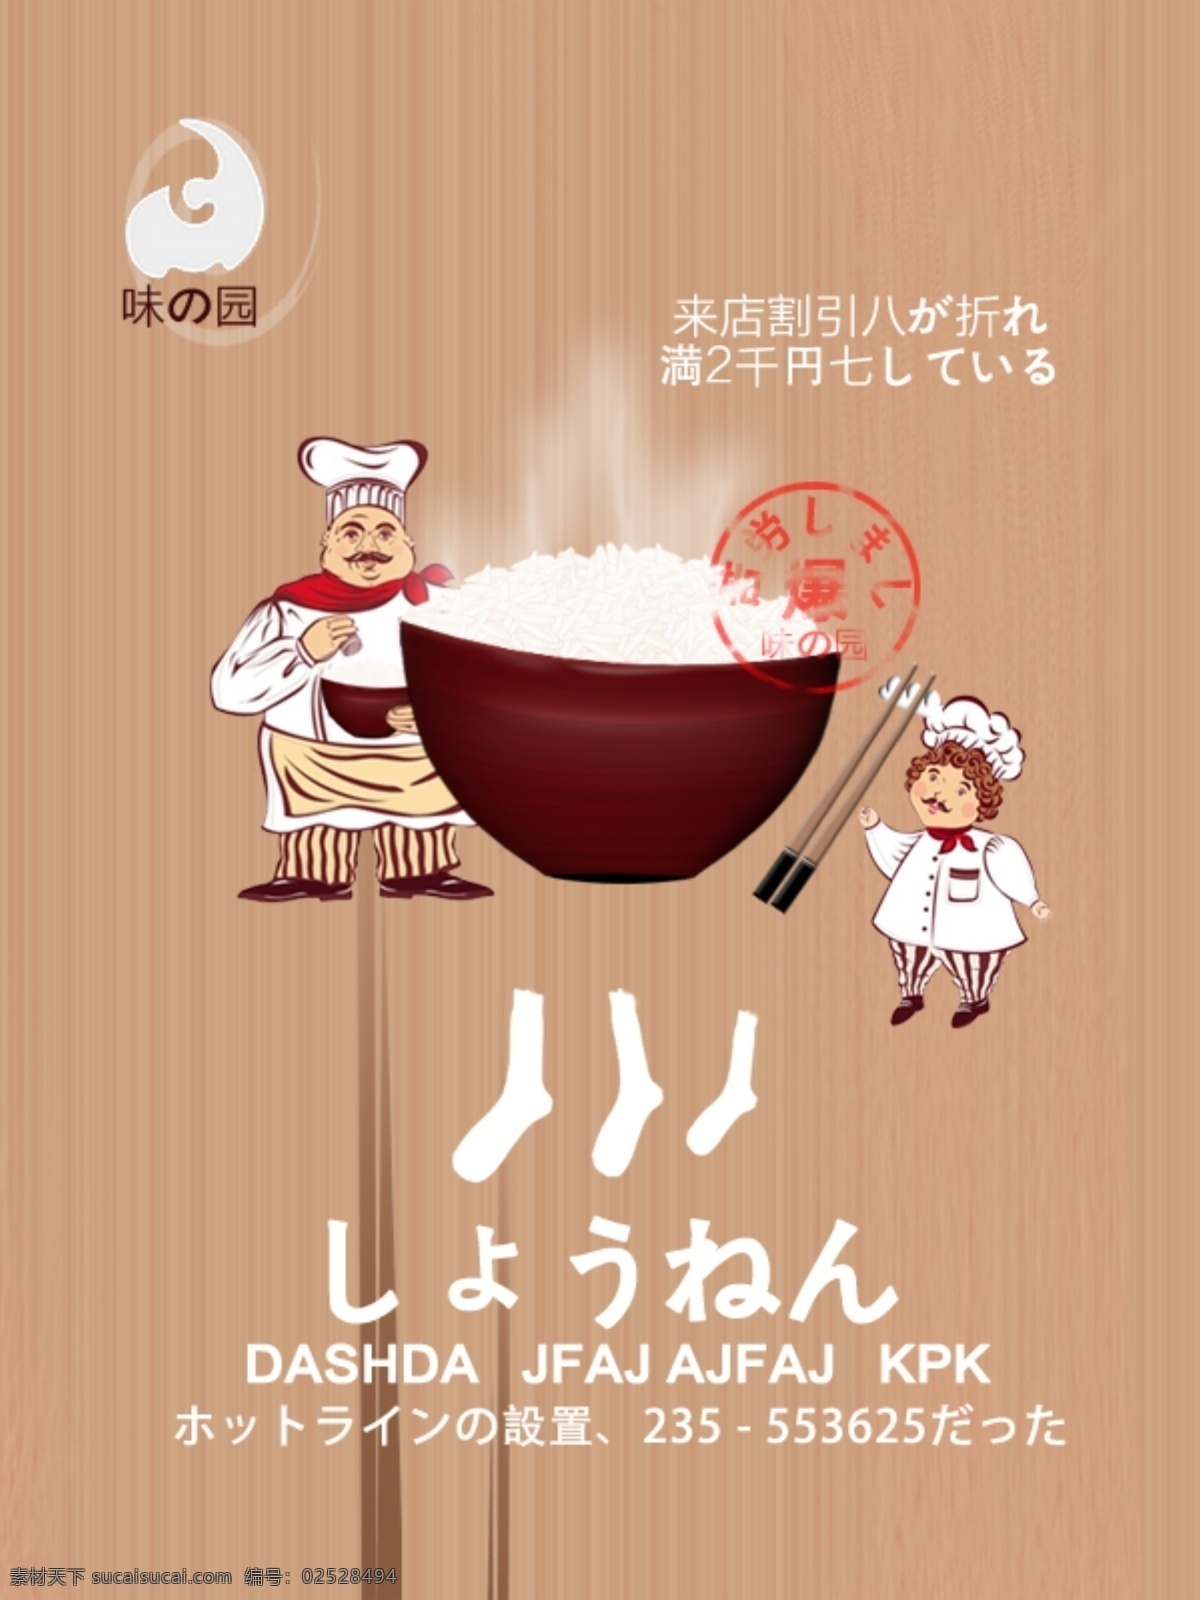 创意 日本 系列 海报 饭店 广告 图 原创 日本系列 可爱 日本元素 米饭 棕色